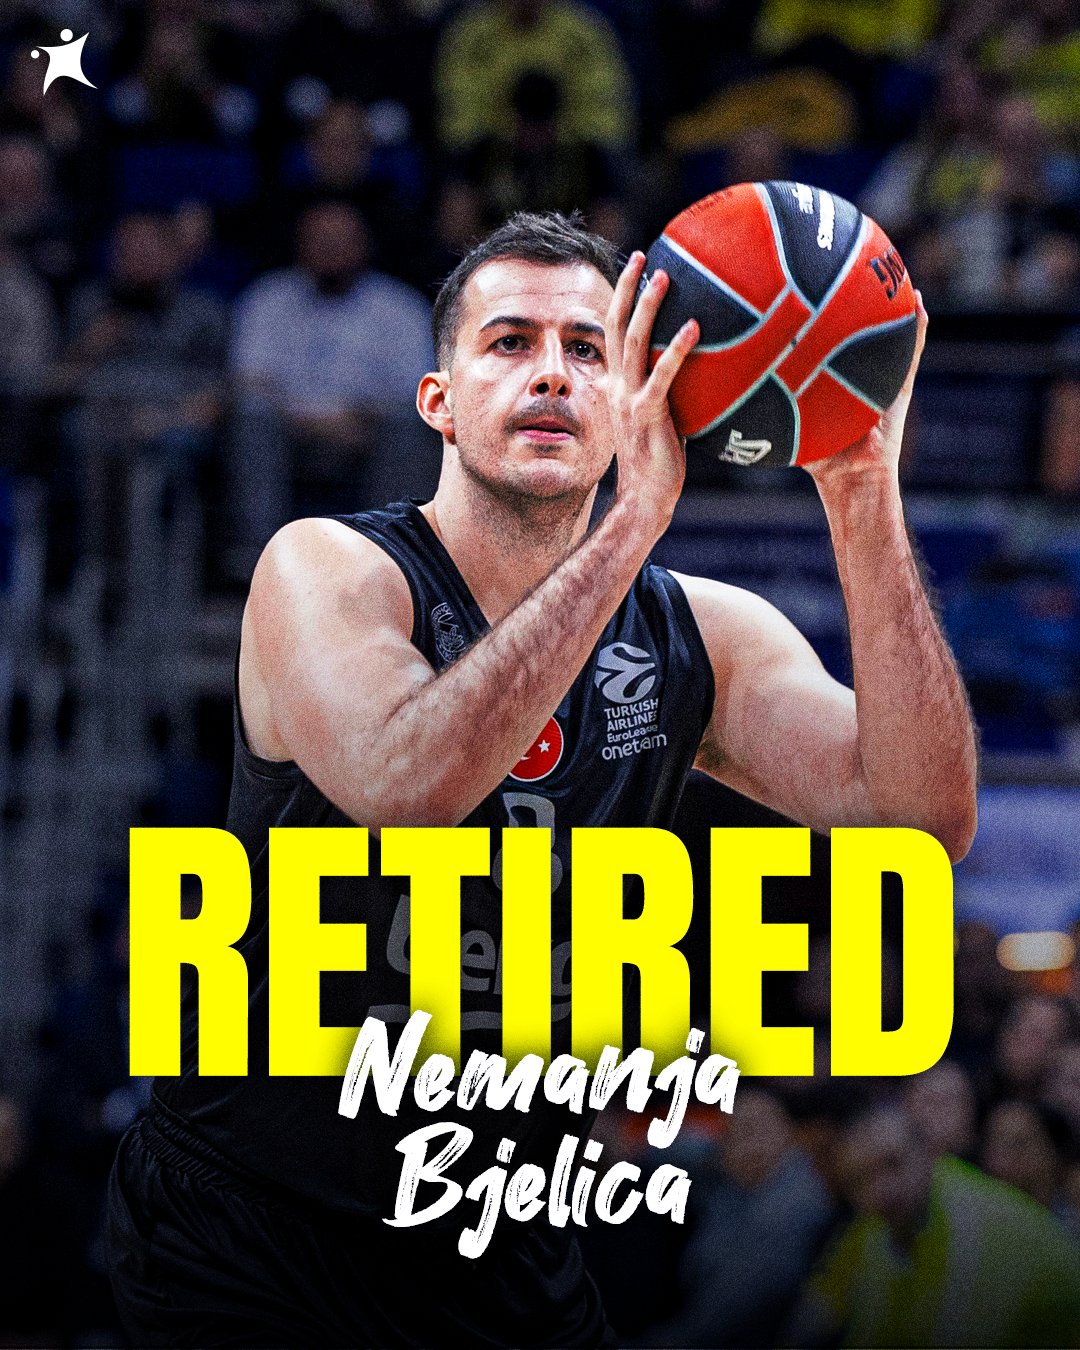 35岁的别利察自宣退役 结束20年职业篮球生涯